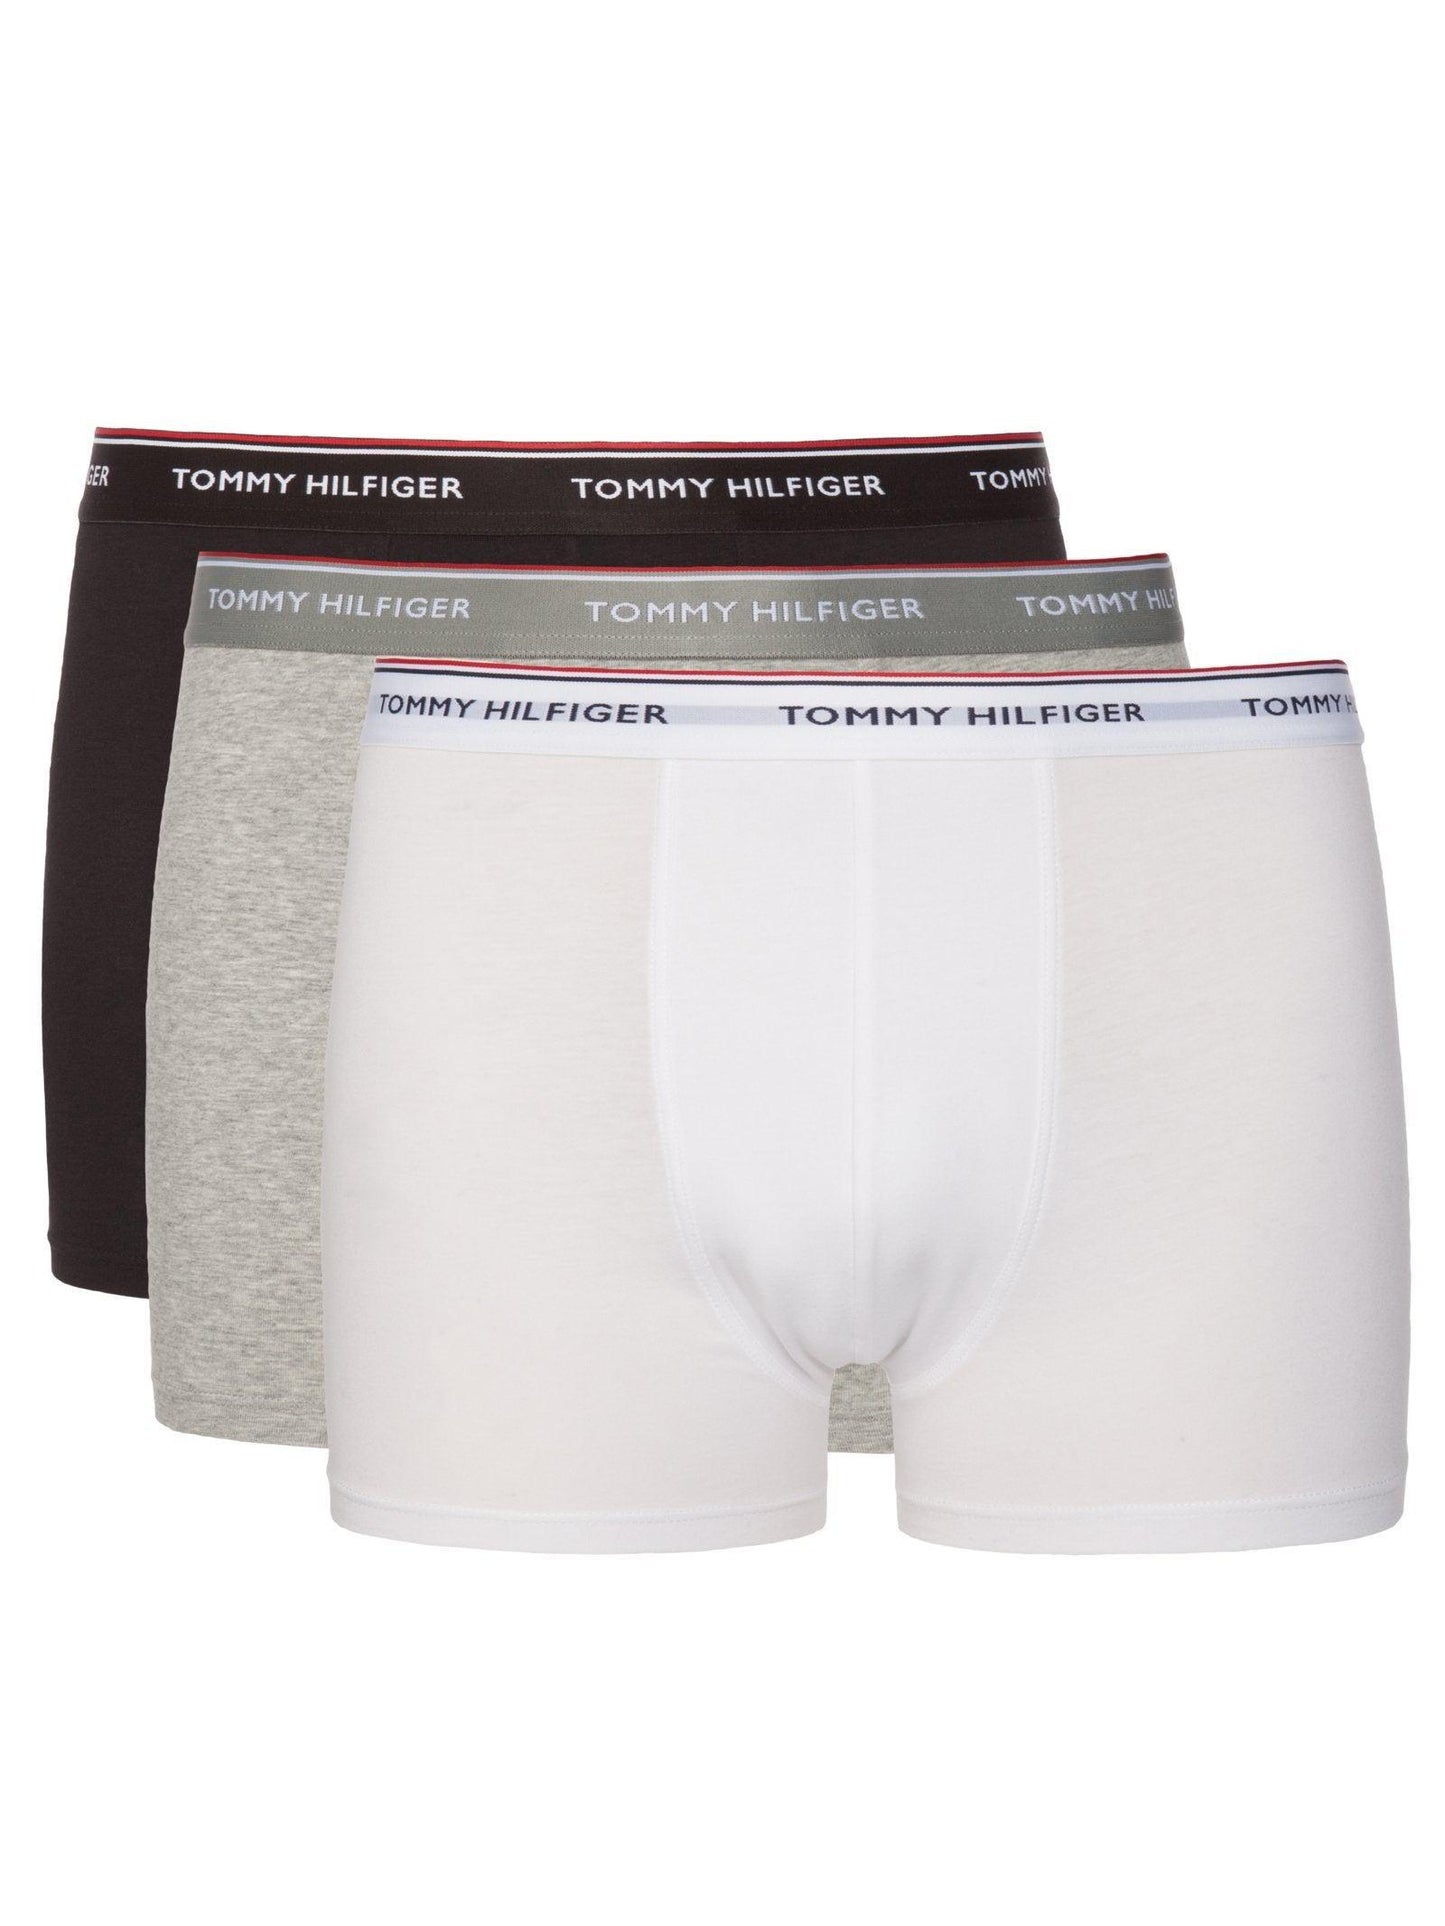 TOMMY HILFIGER black/grey/white underwear